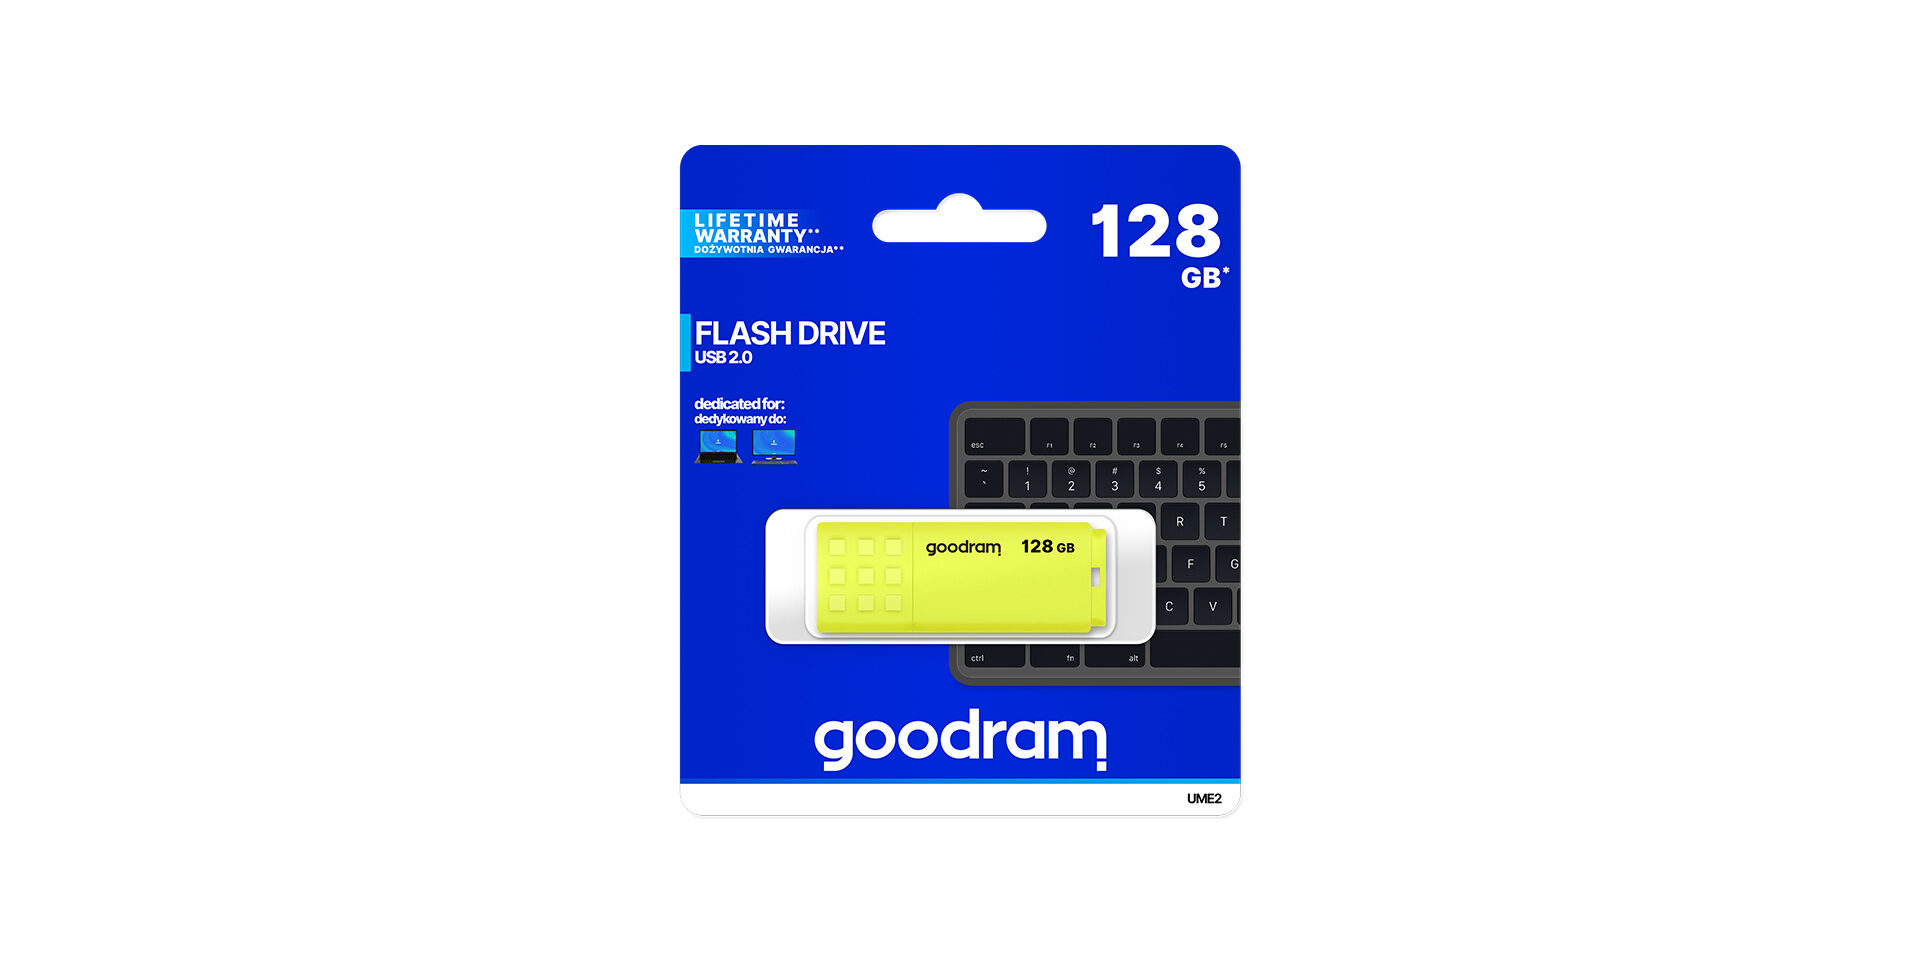 USB UME2 marki Goodram w opakowaniu